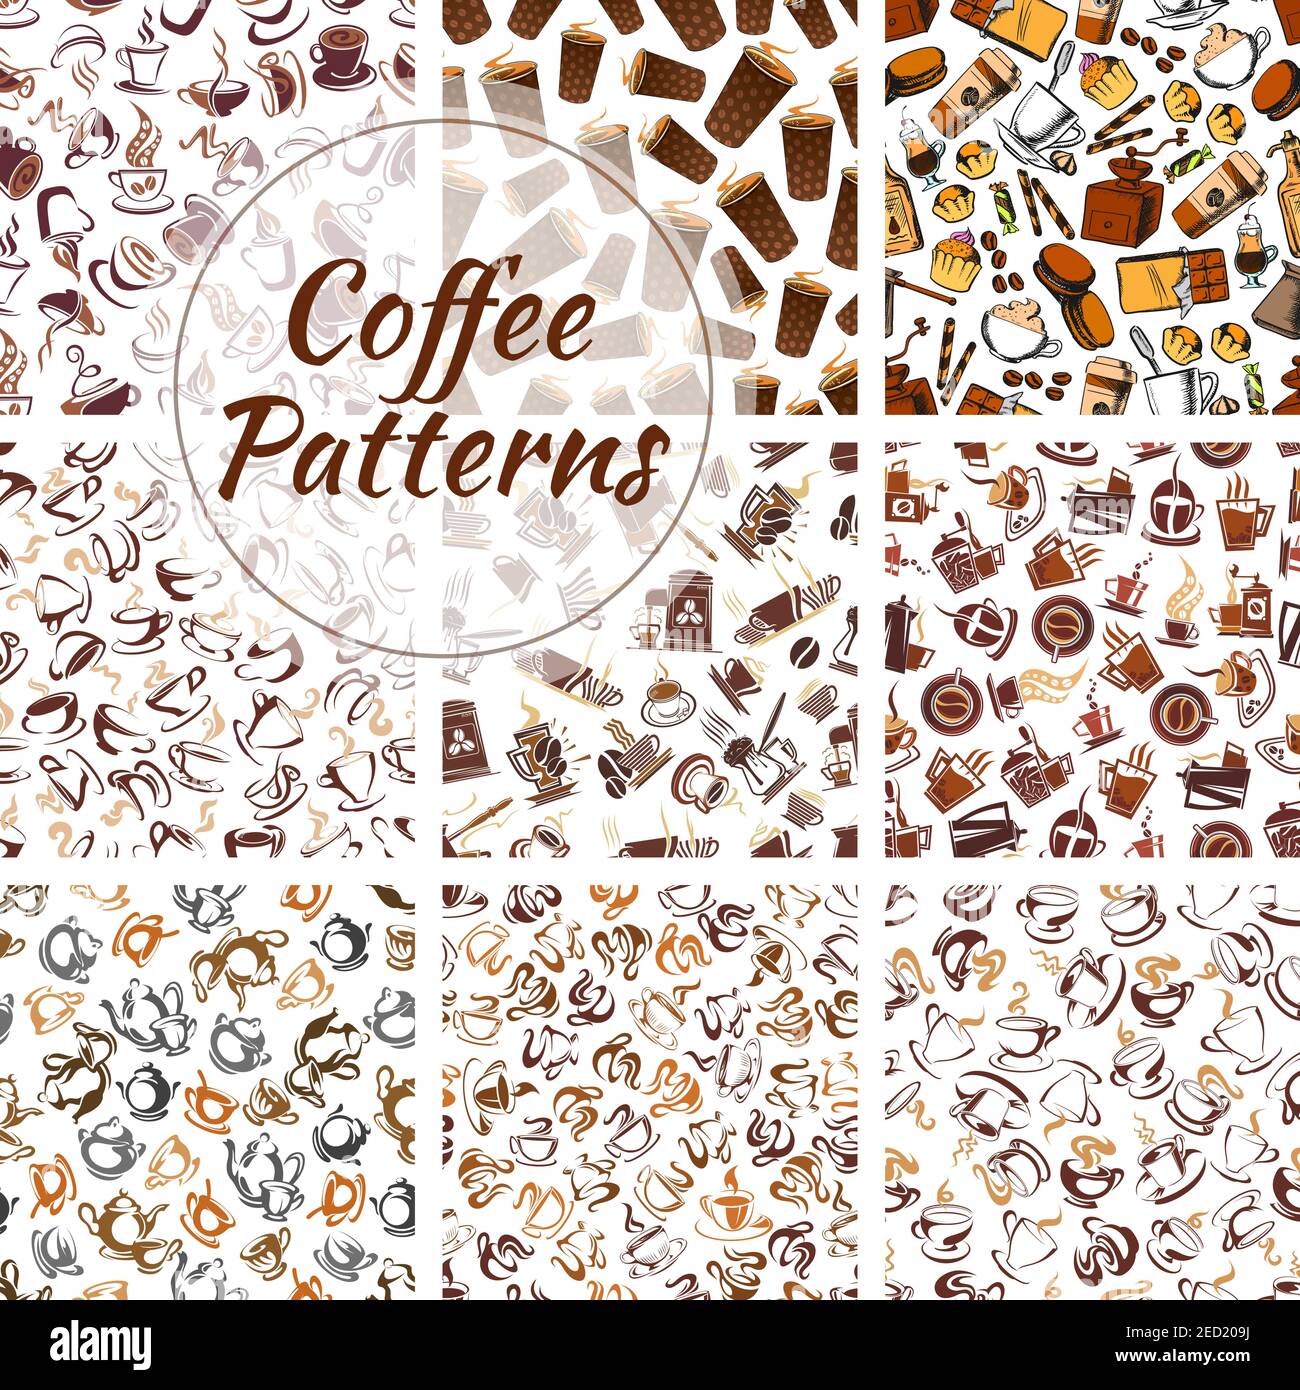 Kaffeebohnen, Tassen, Mühlen Muster gesetzt. Vektor nahtlose Muster von Retro-Kaffeemühle, heiße Kaffeetasse Elemente auf weißem Hintergrund für Café, Cafeteria, Stock Vektor